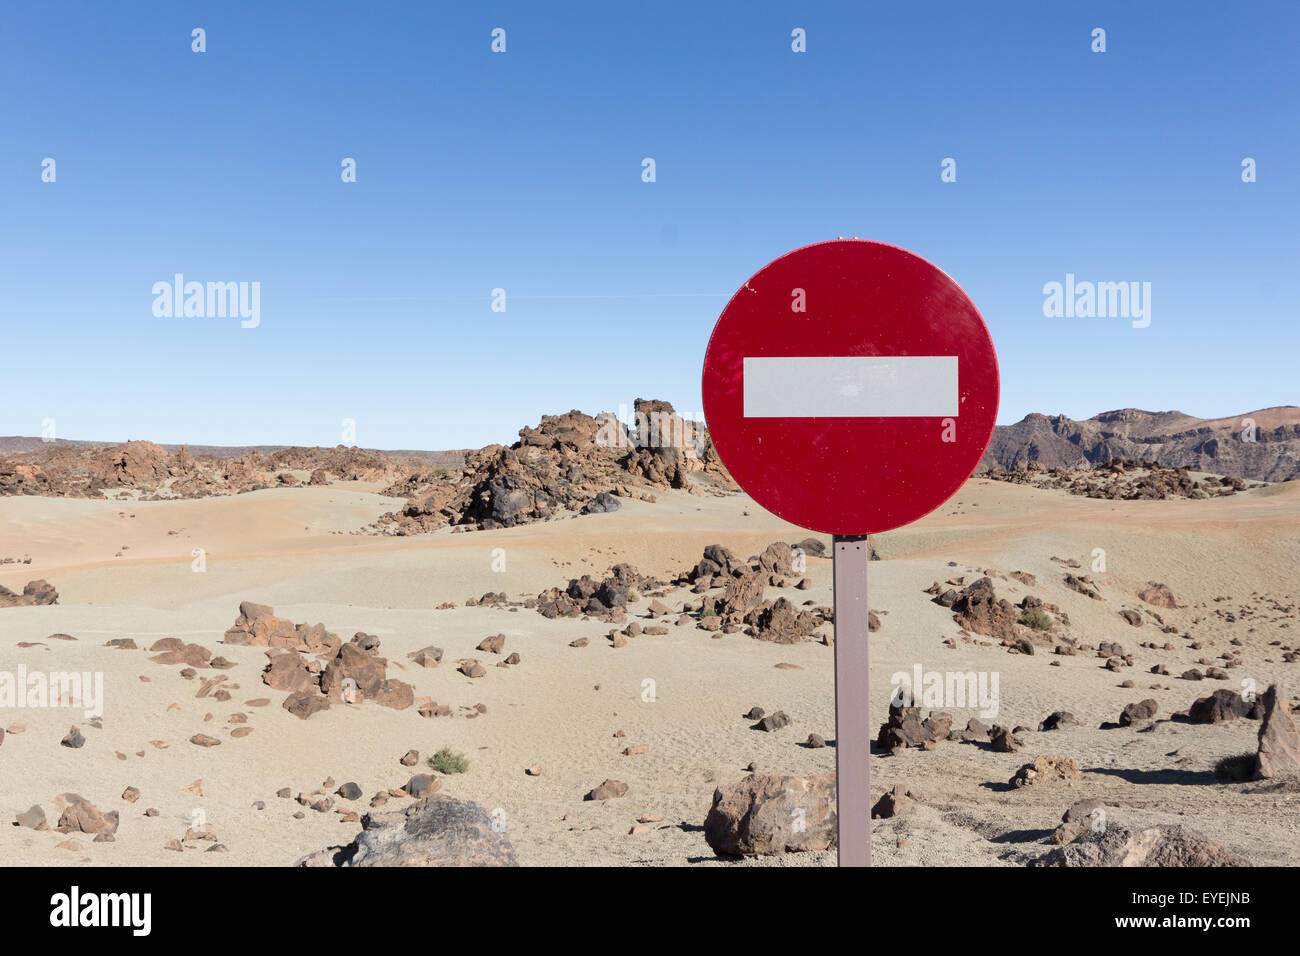 Paysage désertique avec ciel bleu clair et signe de la circulation Banque D'Images